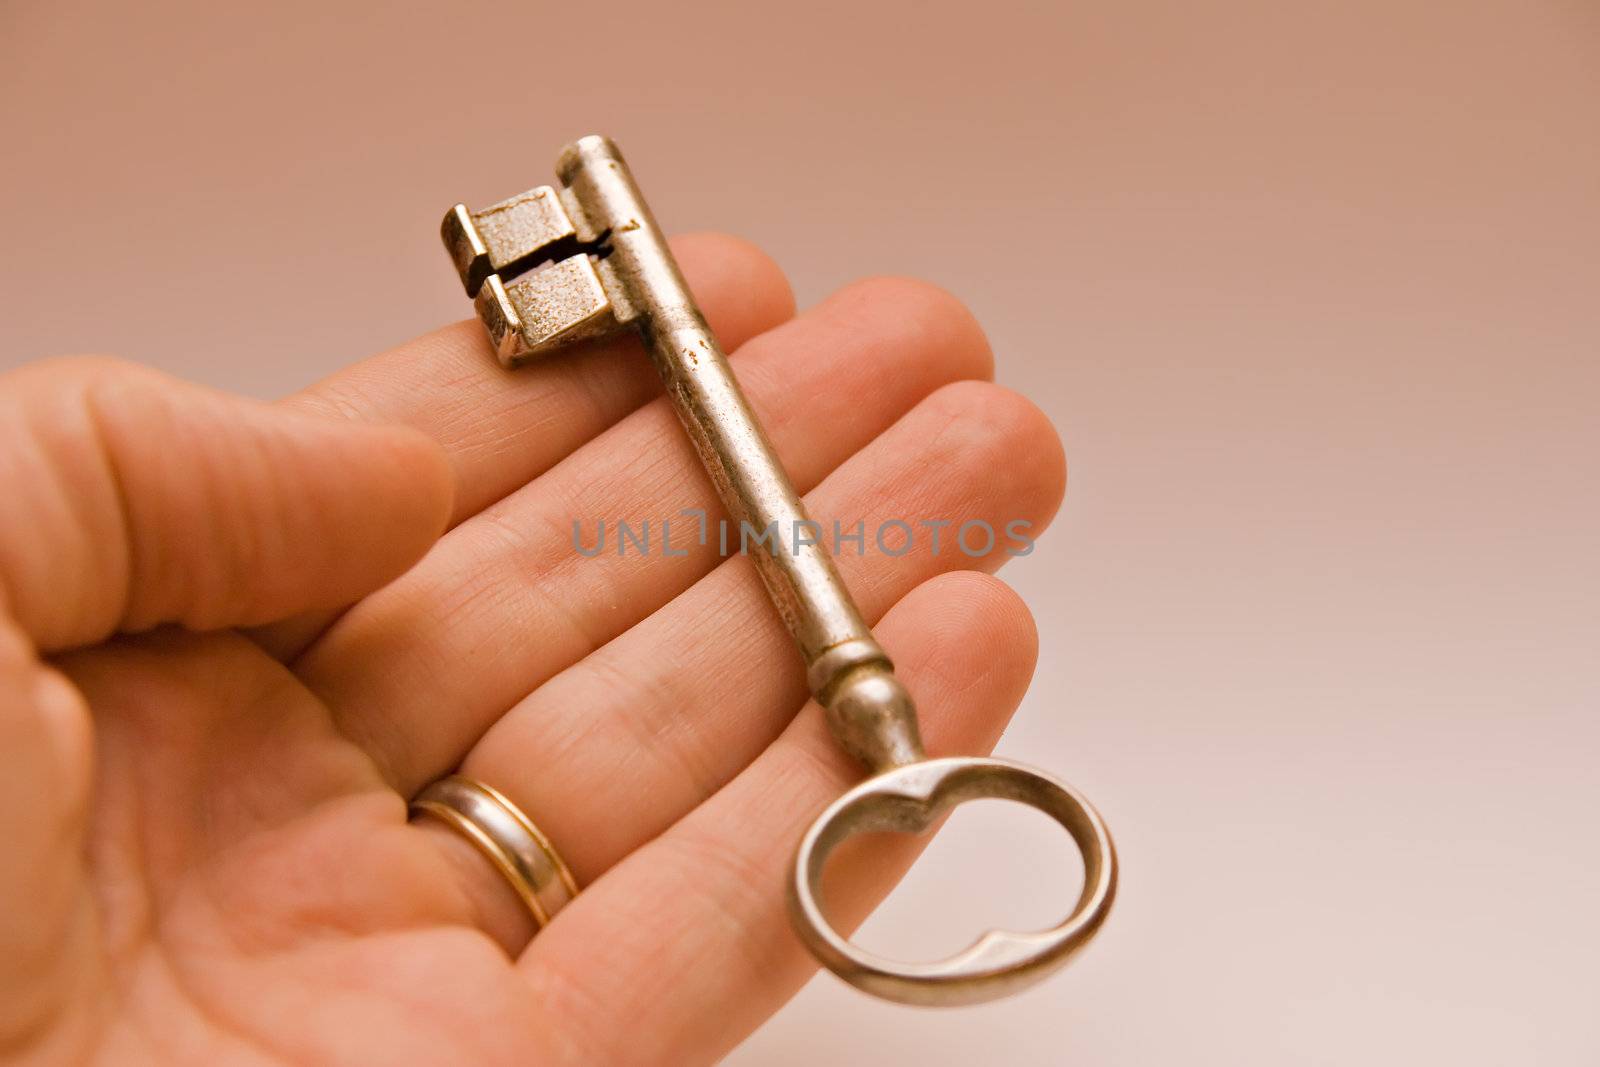 key in hand by chrisroll